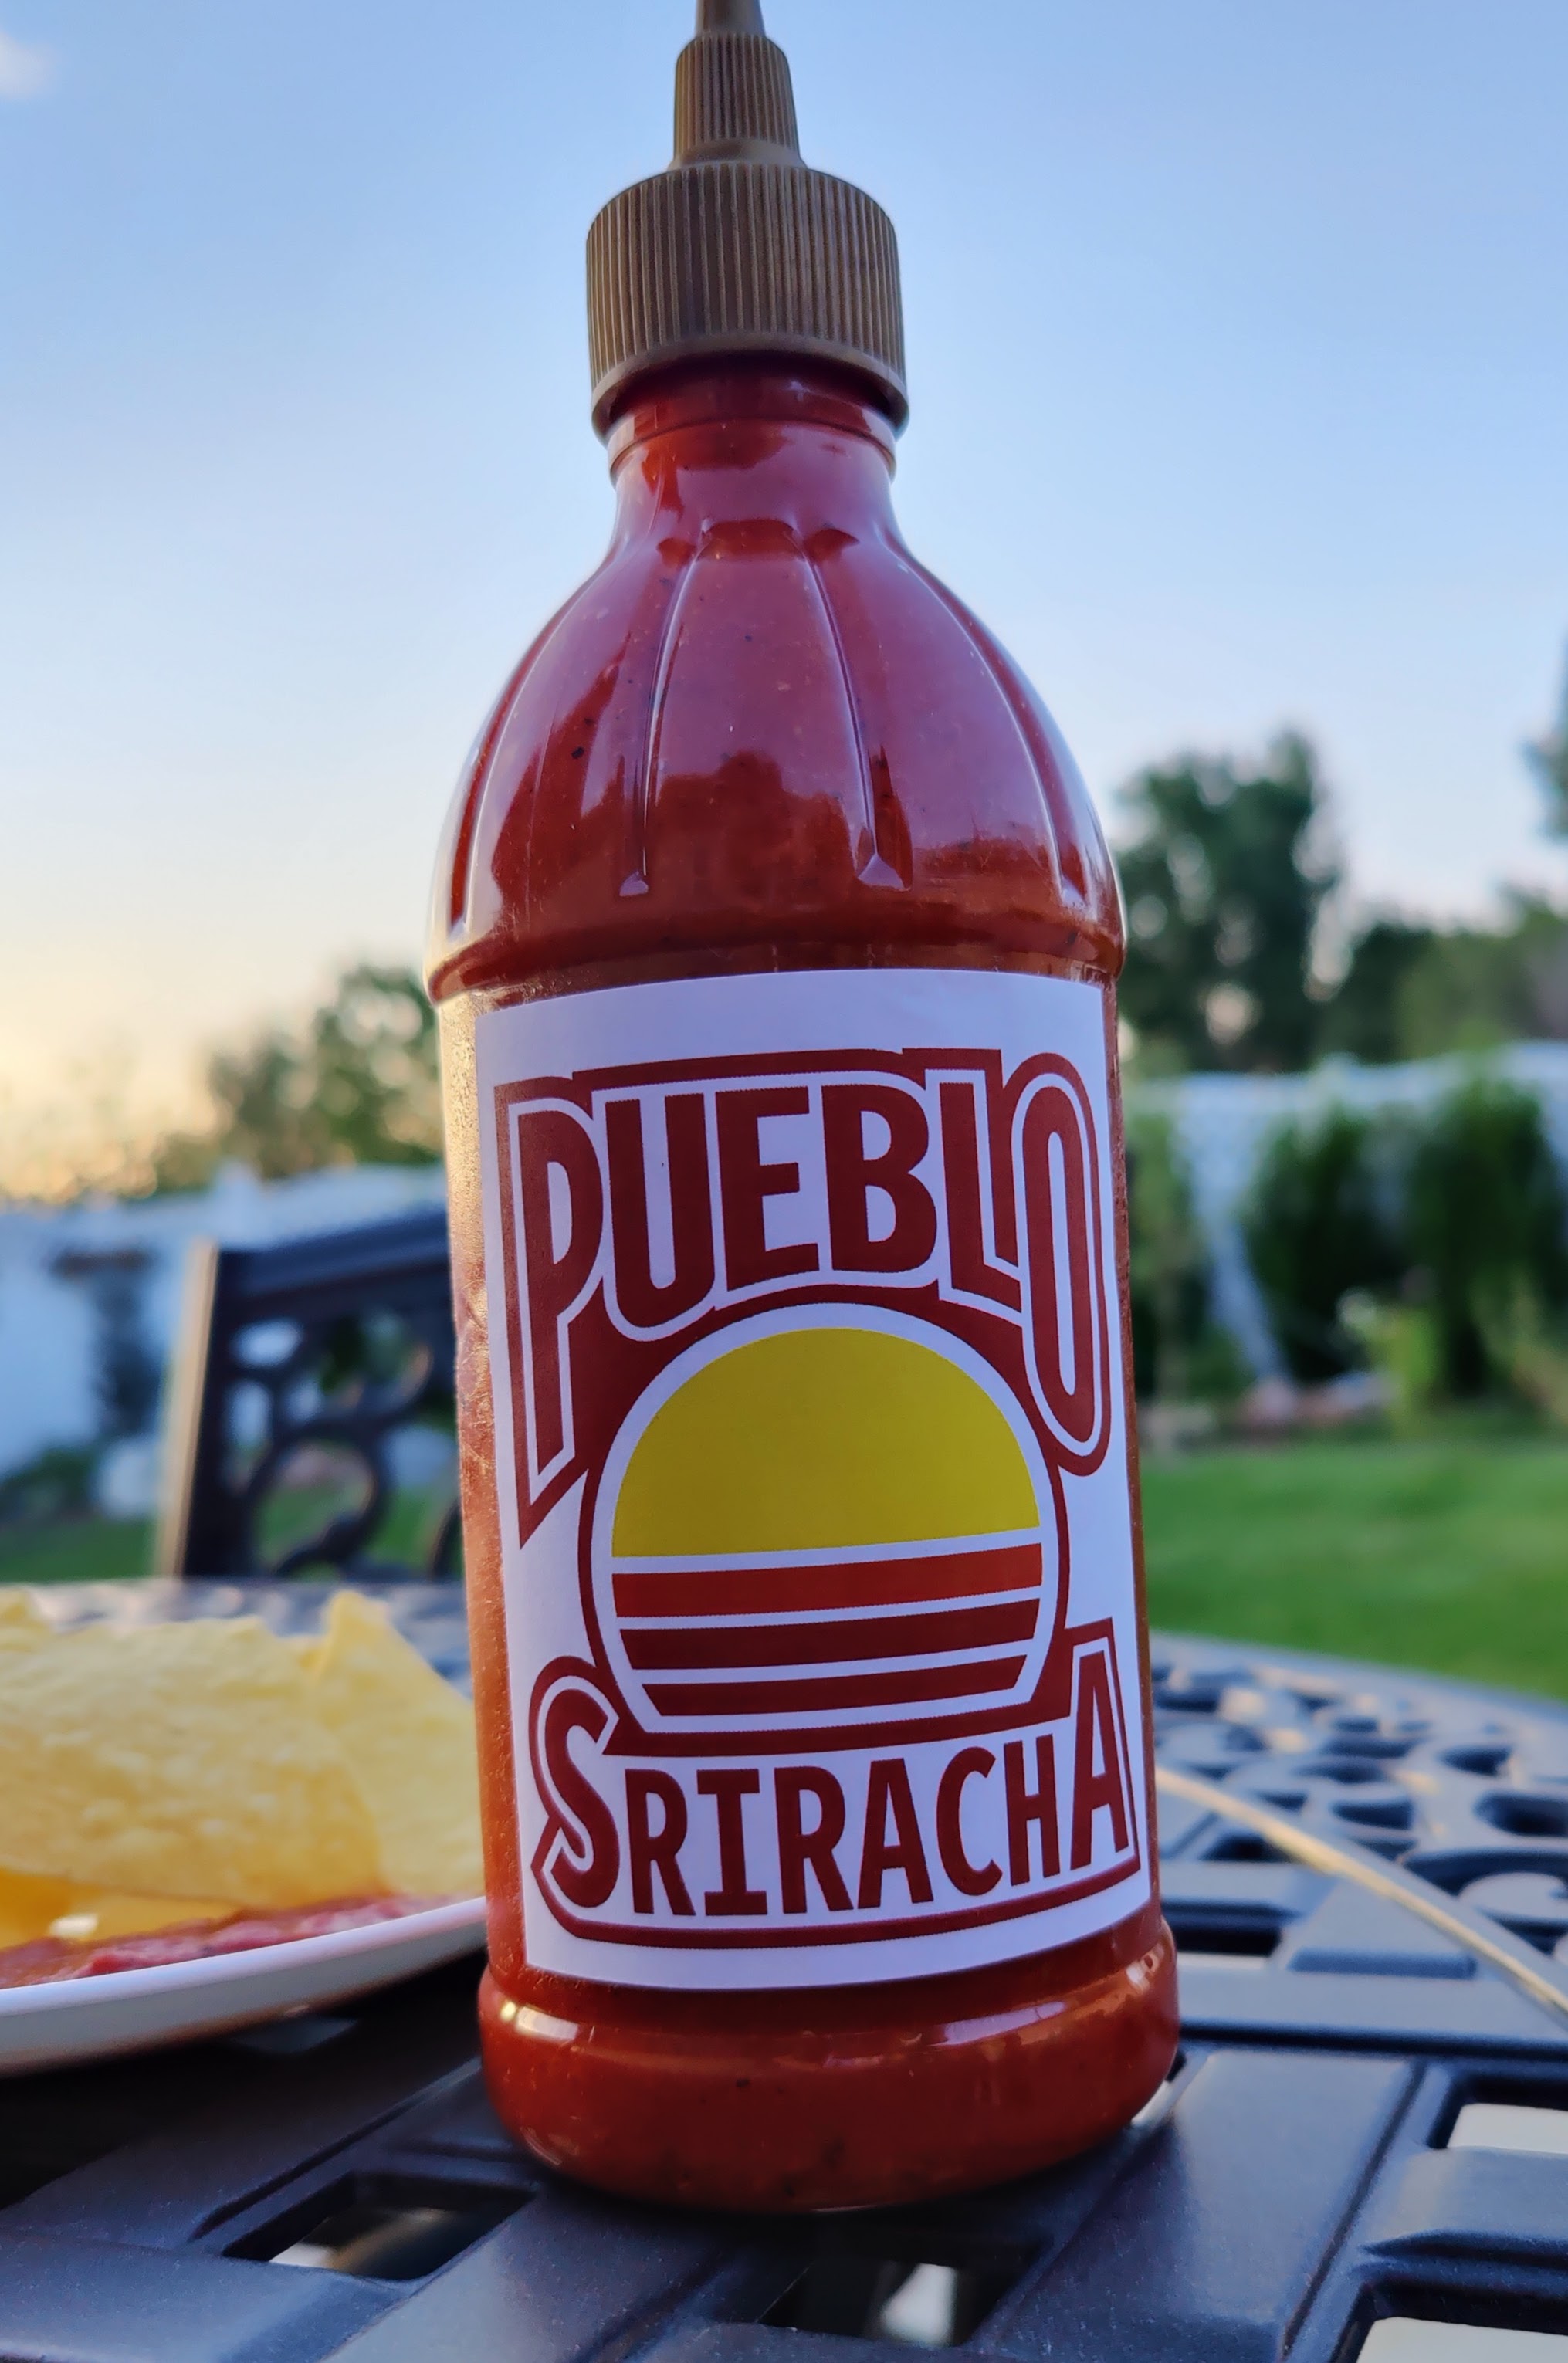 Pueblo Sriracha